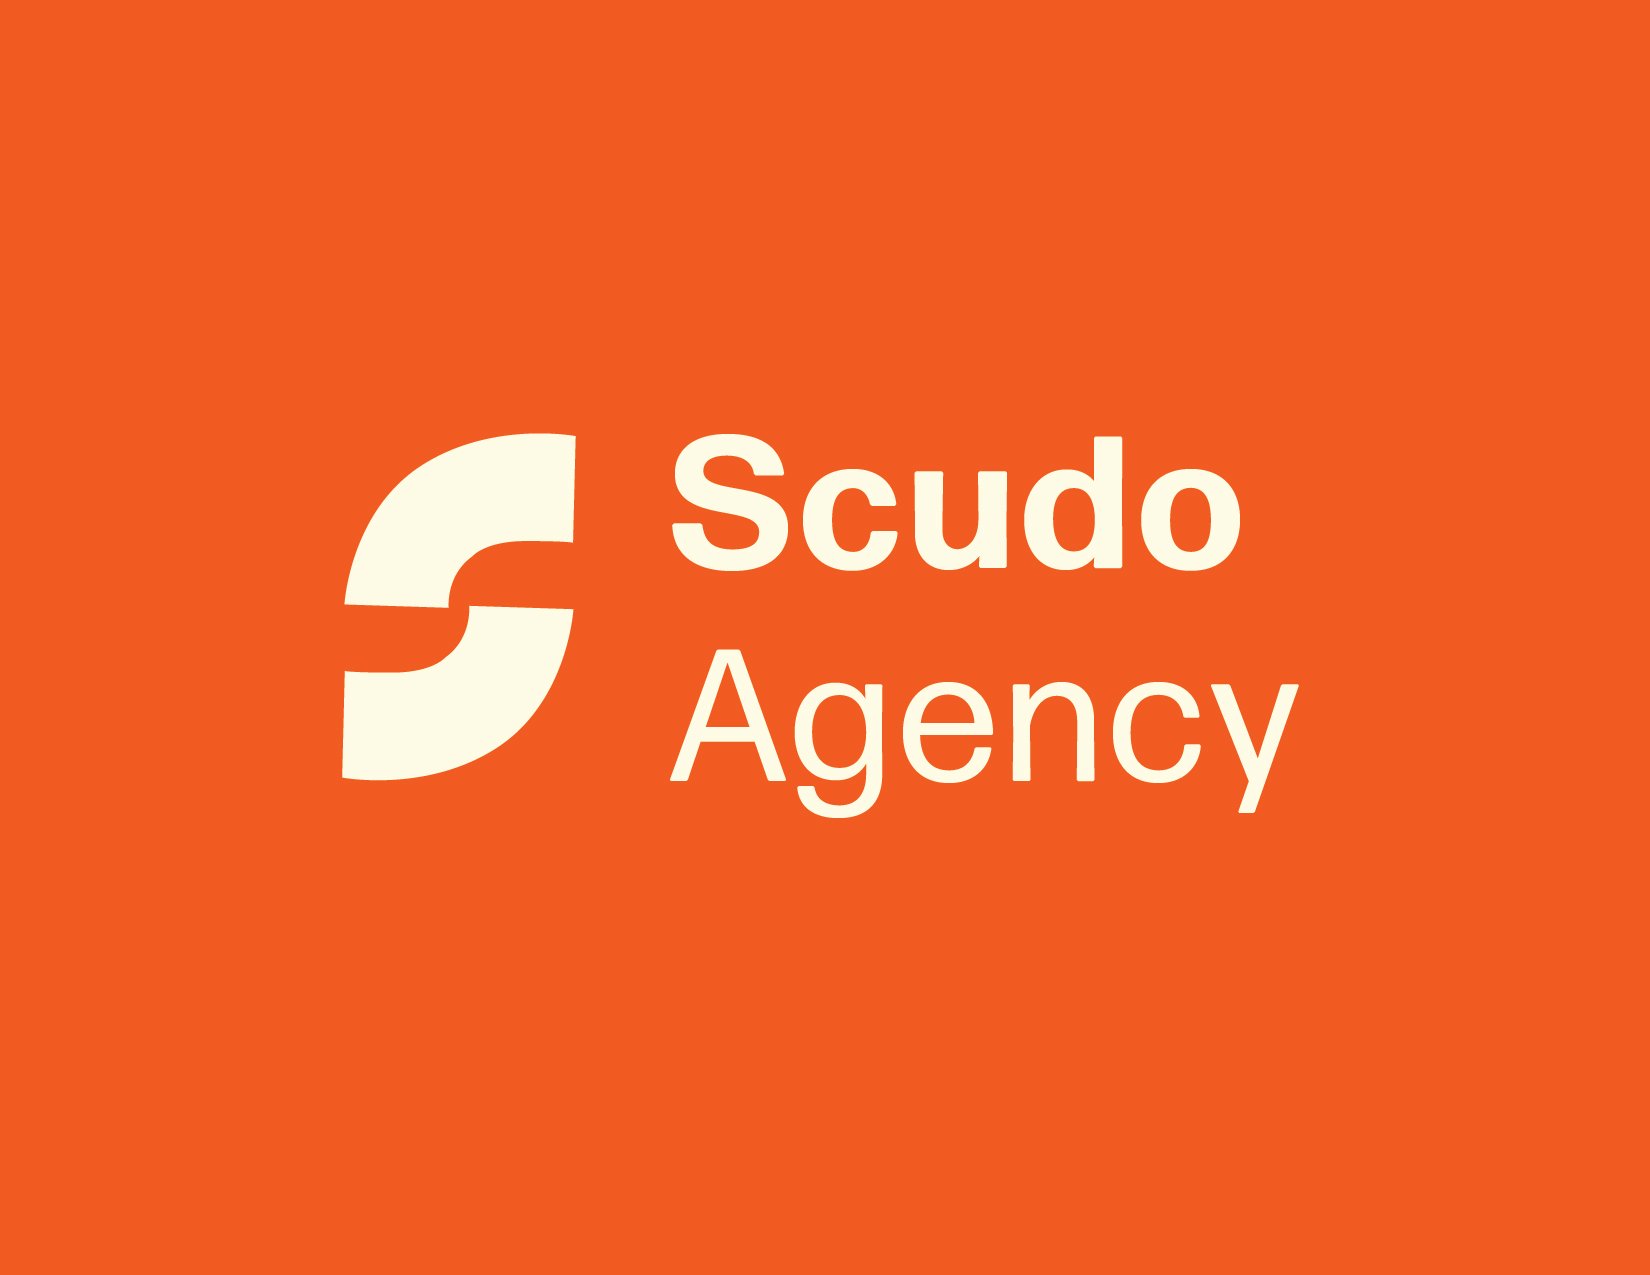 scudo agency brand identity3.jpg